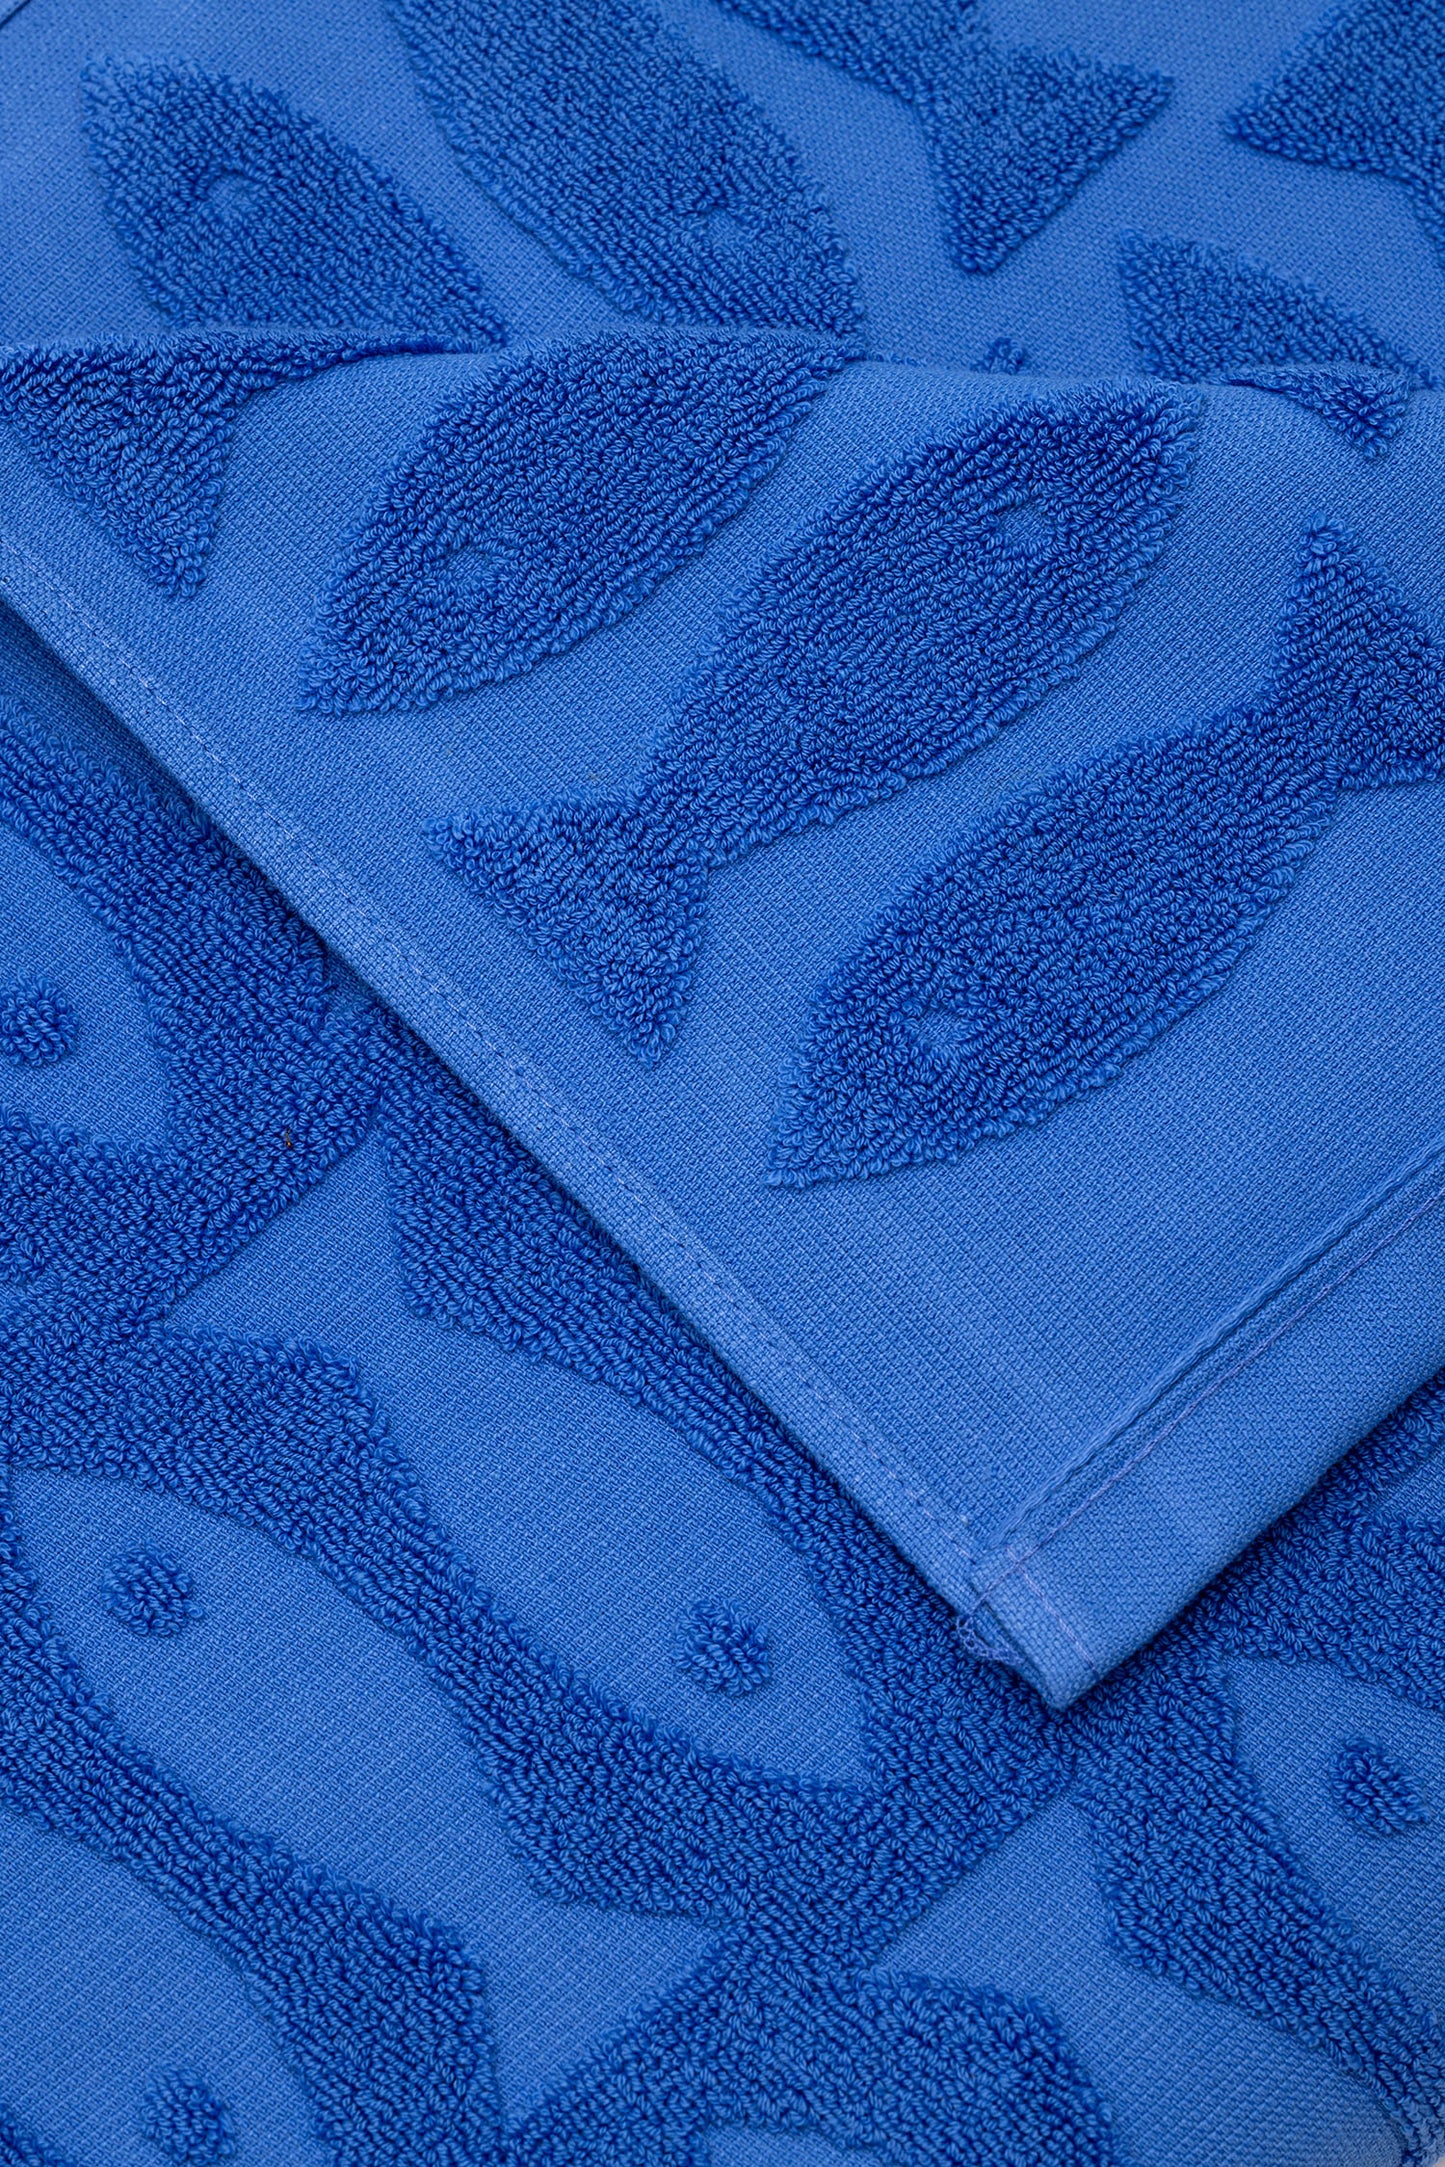 Sardine Pool Towel Blue